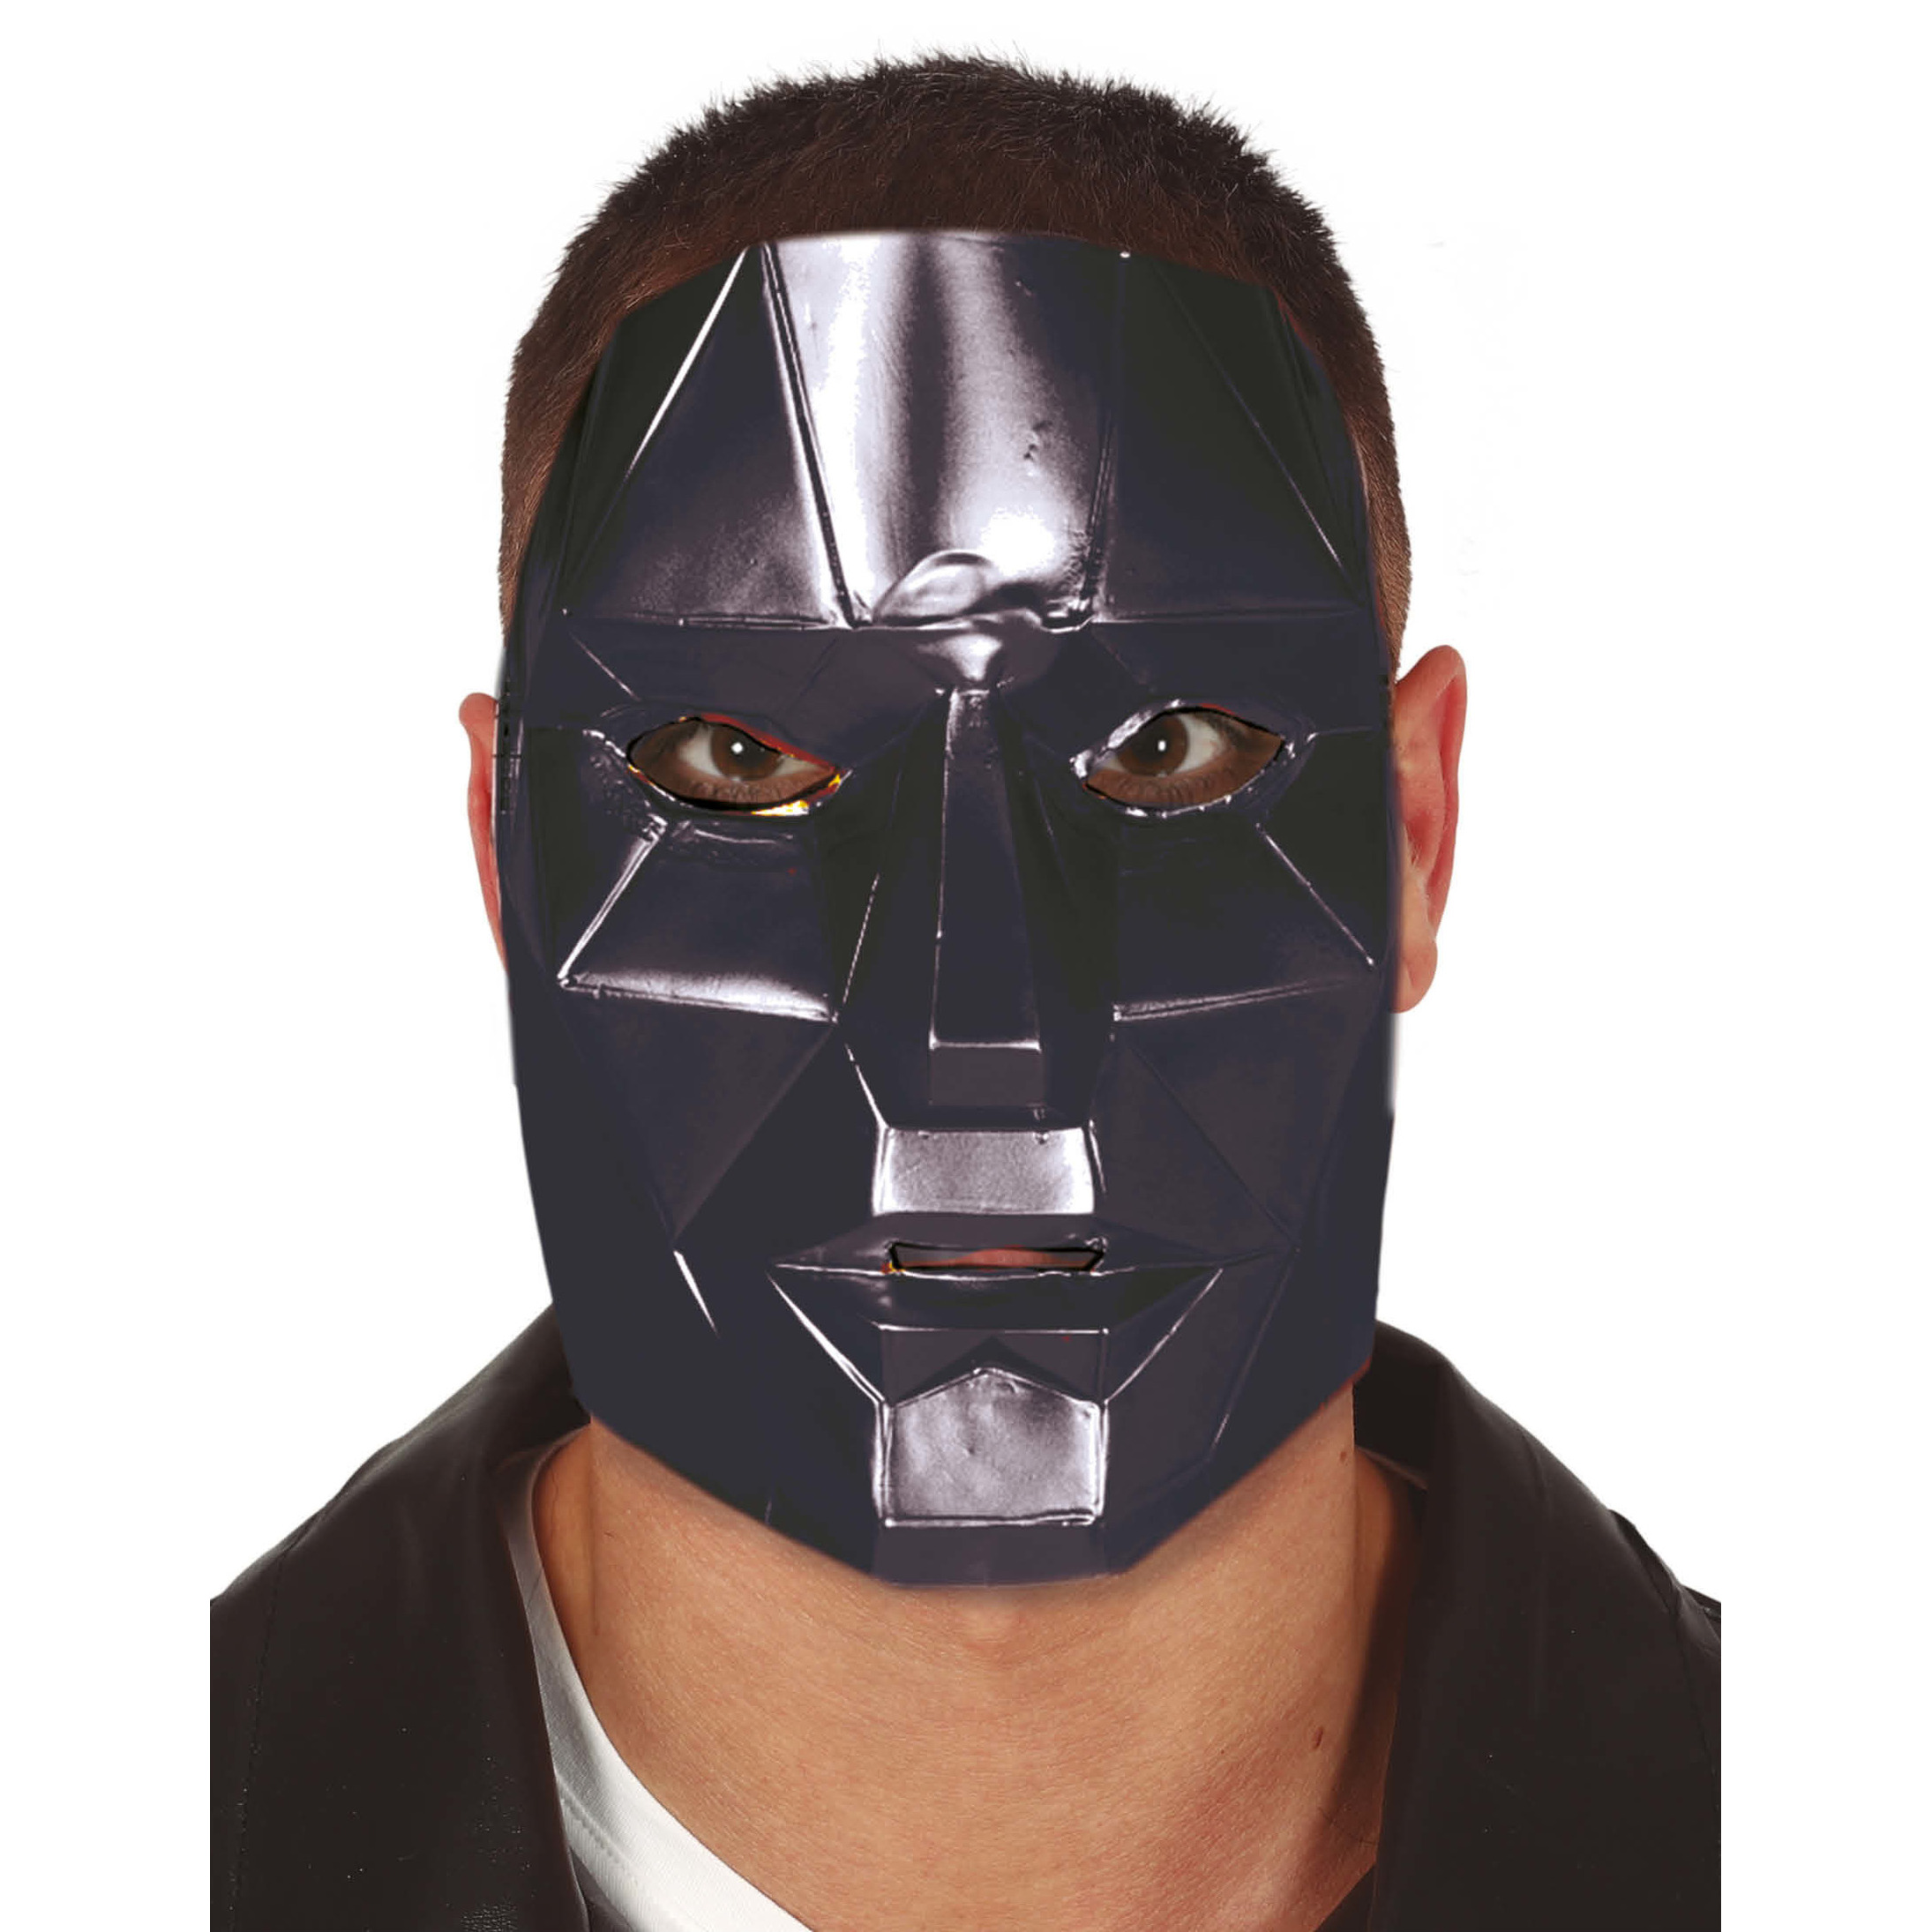 Verkleed masker game aanvoerder bekend van tv serie